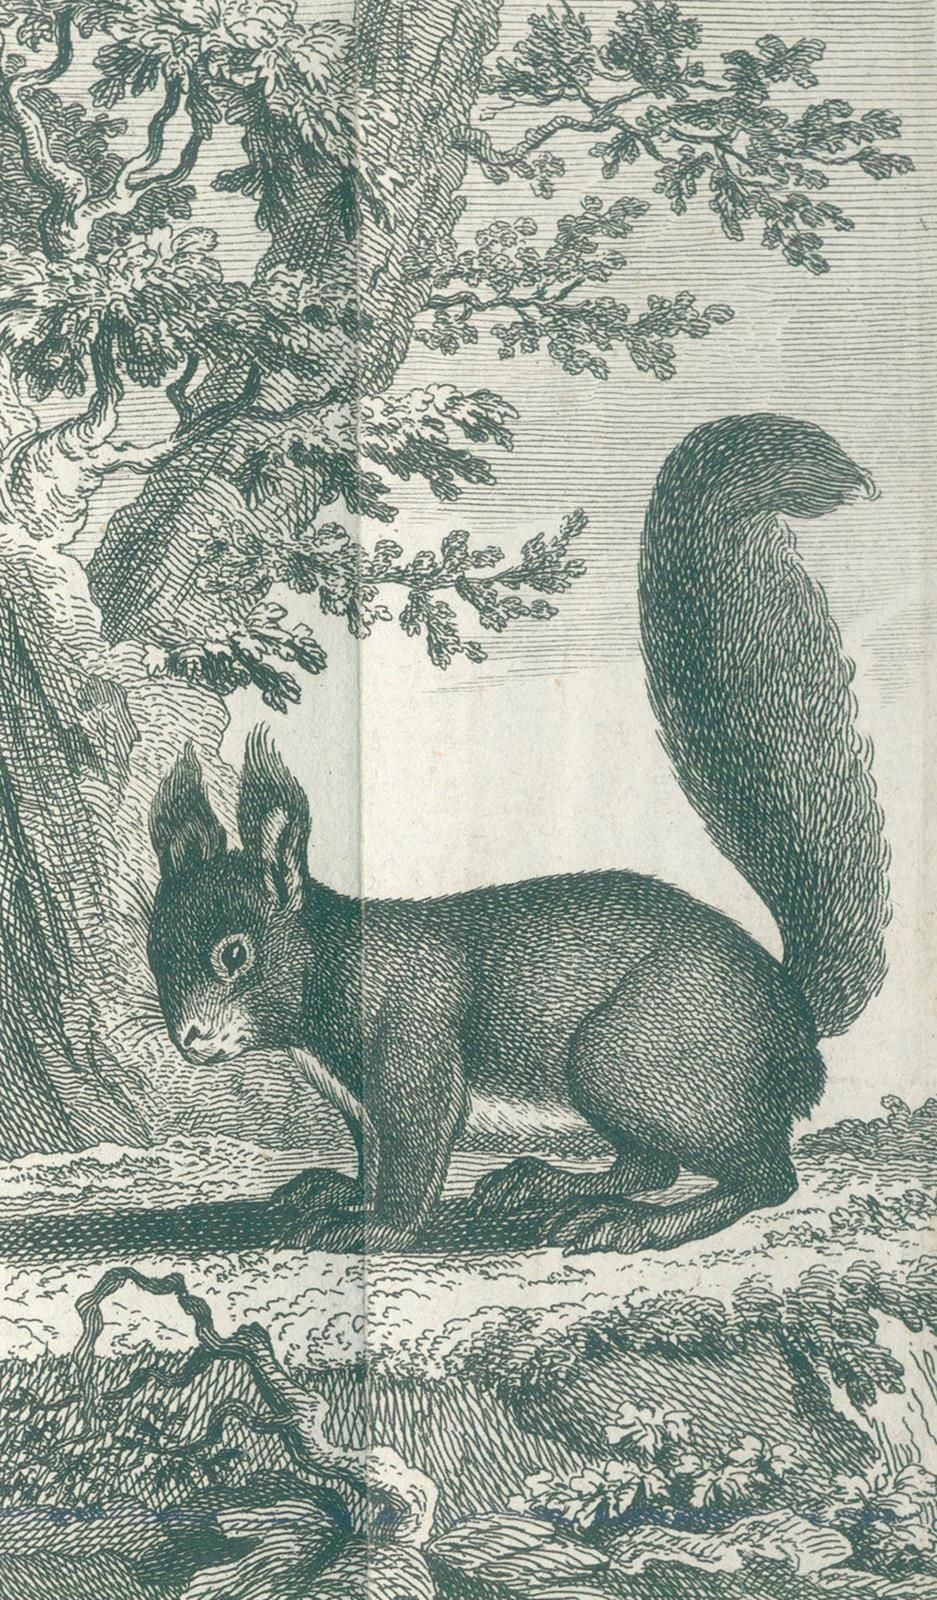 Buffon,(G.L.L.)de. Natural history of quadrupedal animals. 10 vols. Of the serie&hellip;